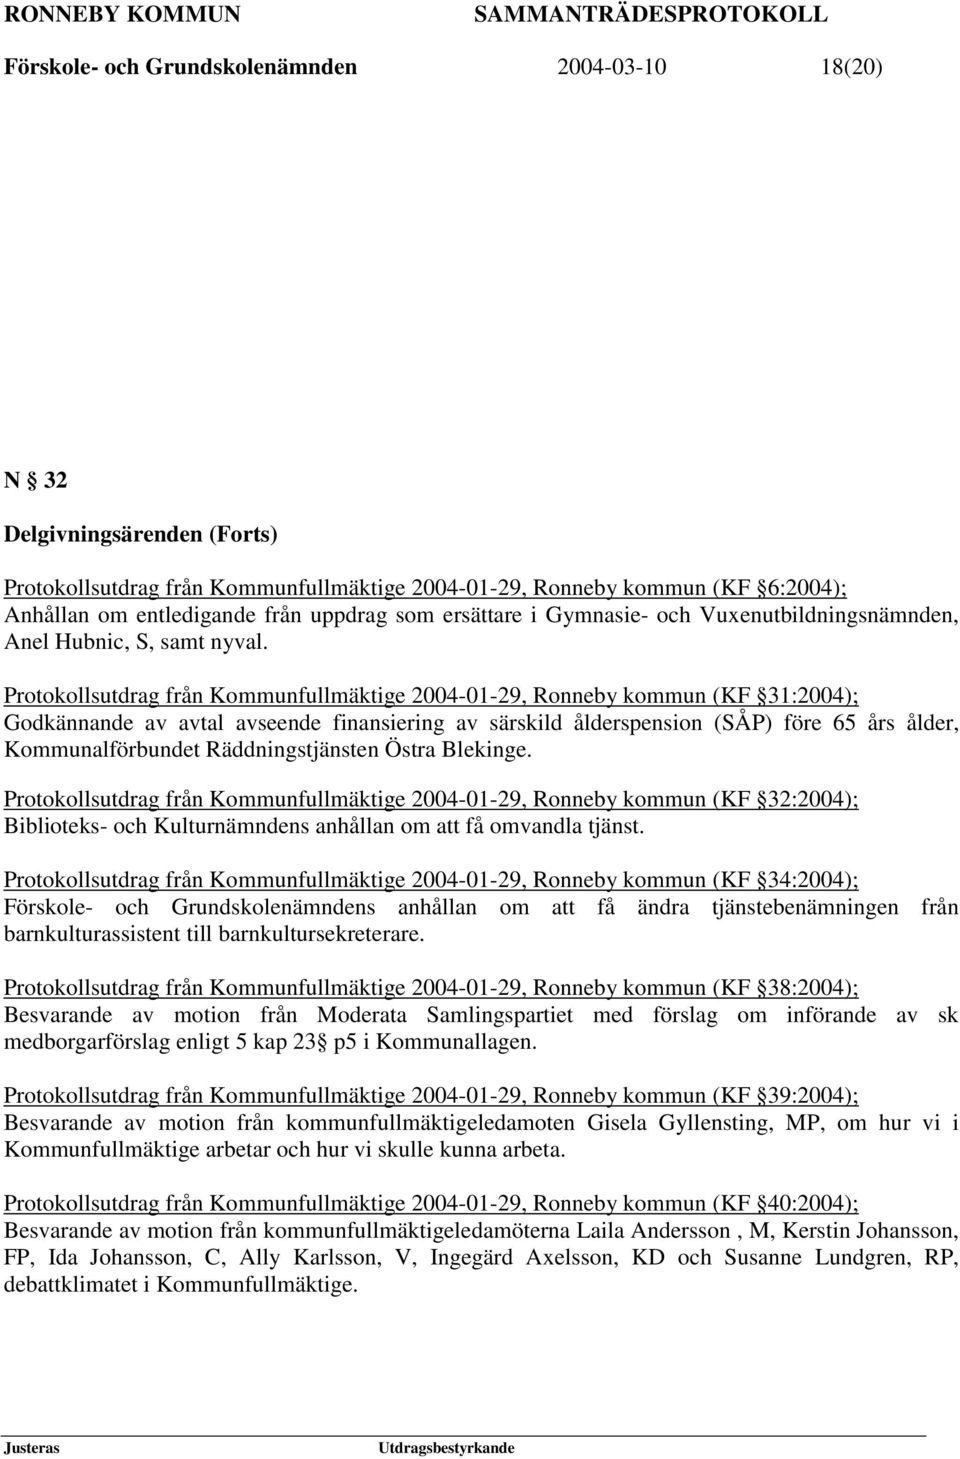 Protokollsutdrag från Kommunfullmäktige 2004-01-29, Ronneby kommun (KF 31:2004); Godkännande av avtal avseende finansiering av särskild ålderspension (SÅP) före 65 års ålder, Kommunalförbundet